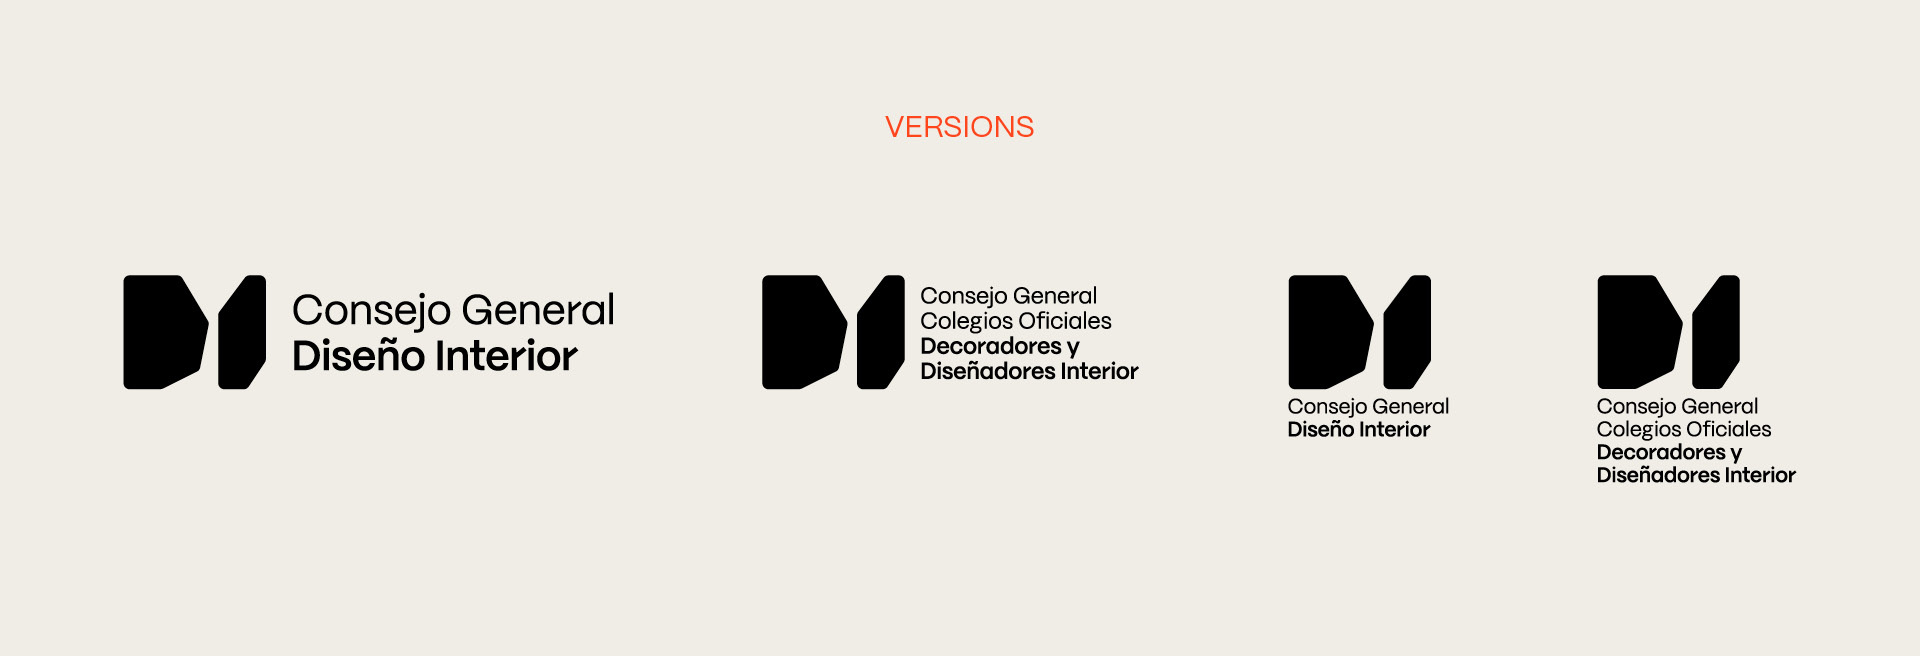 Imagen gráfica Consejo General de Colegios Oficiales de Decoradores y Diseñadores de Interior